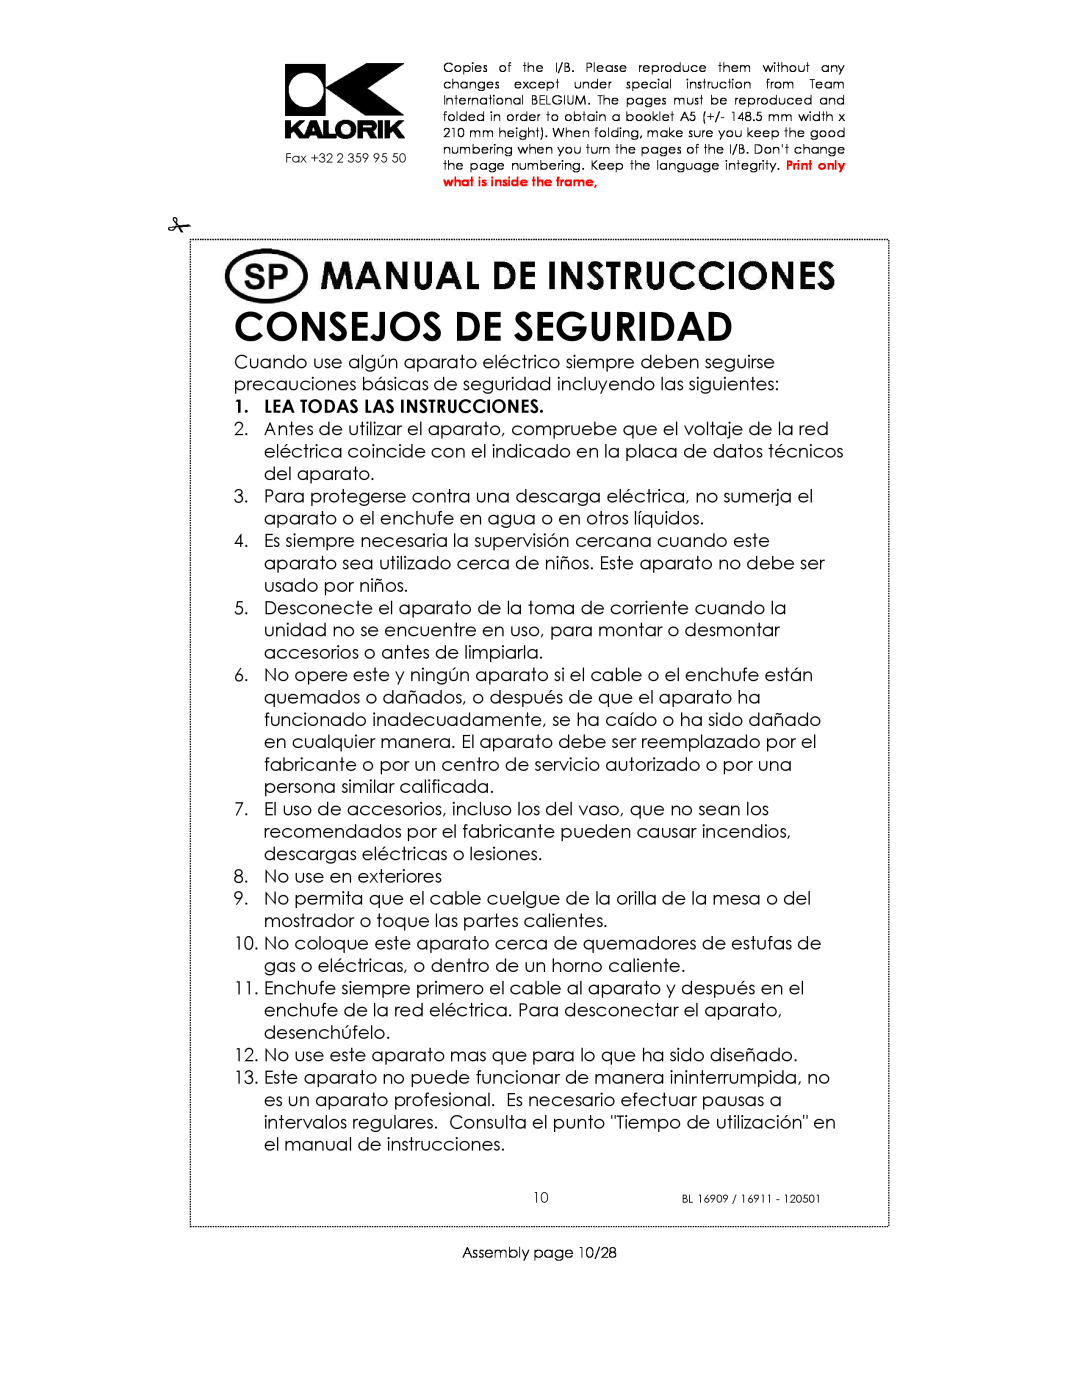 Kalorik 33029, usk bl 16909, 16911 manual Consejos De Seguridad, Lea Todas Las Instrucciones 